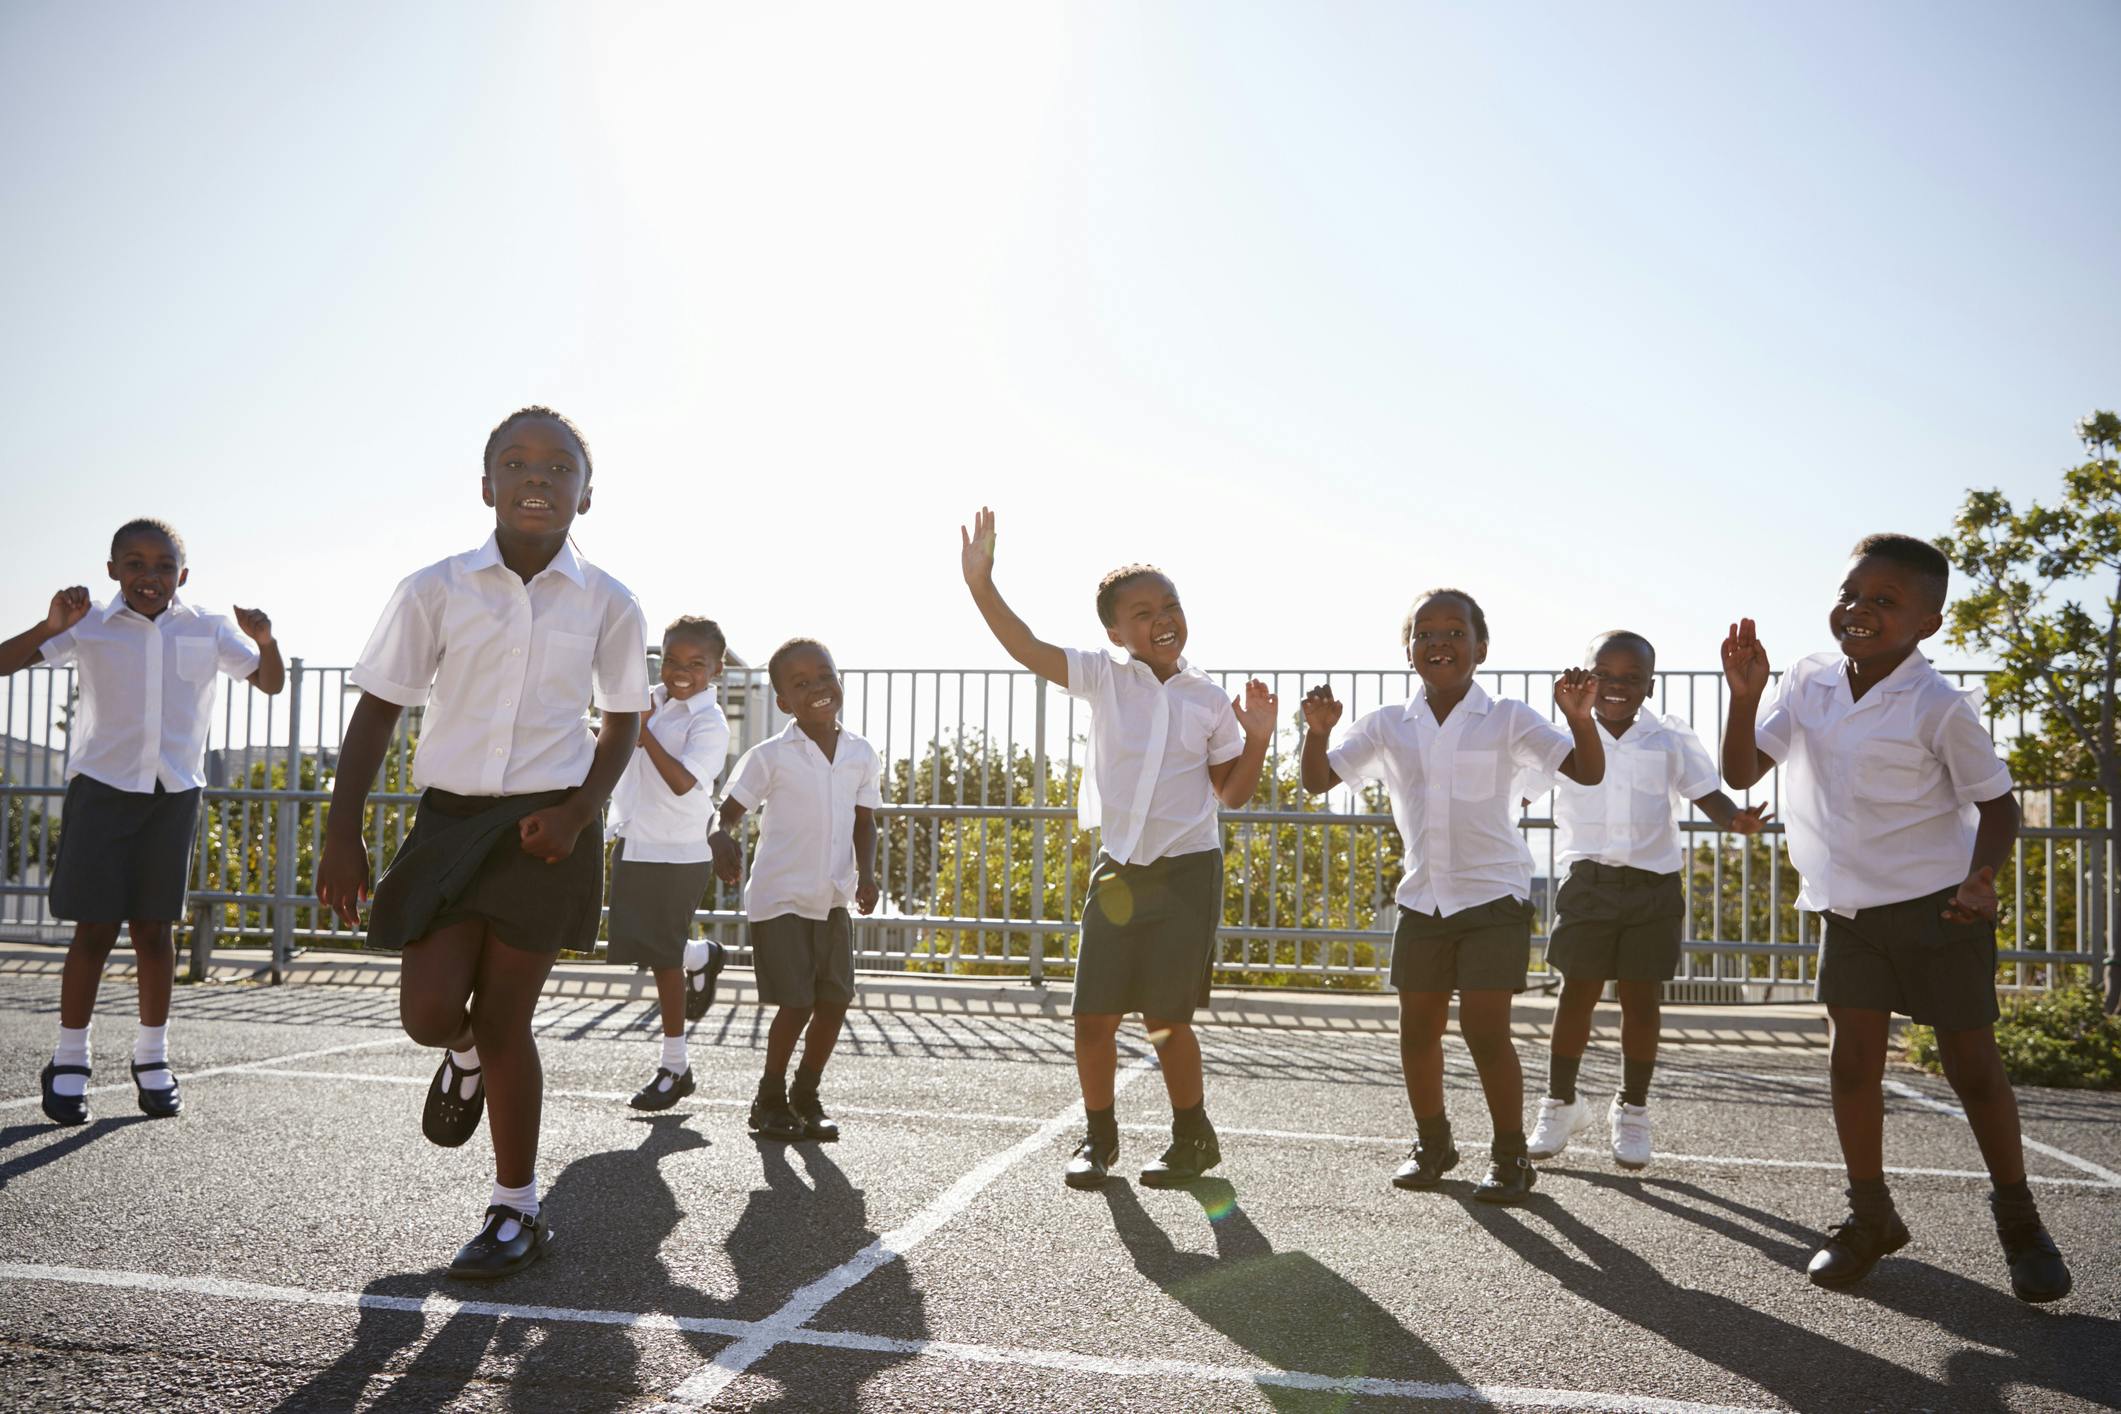 Namibian school children play outside